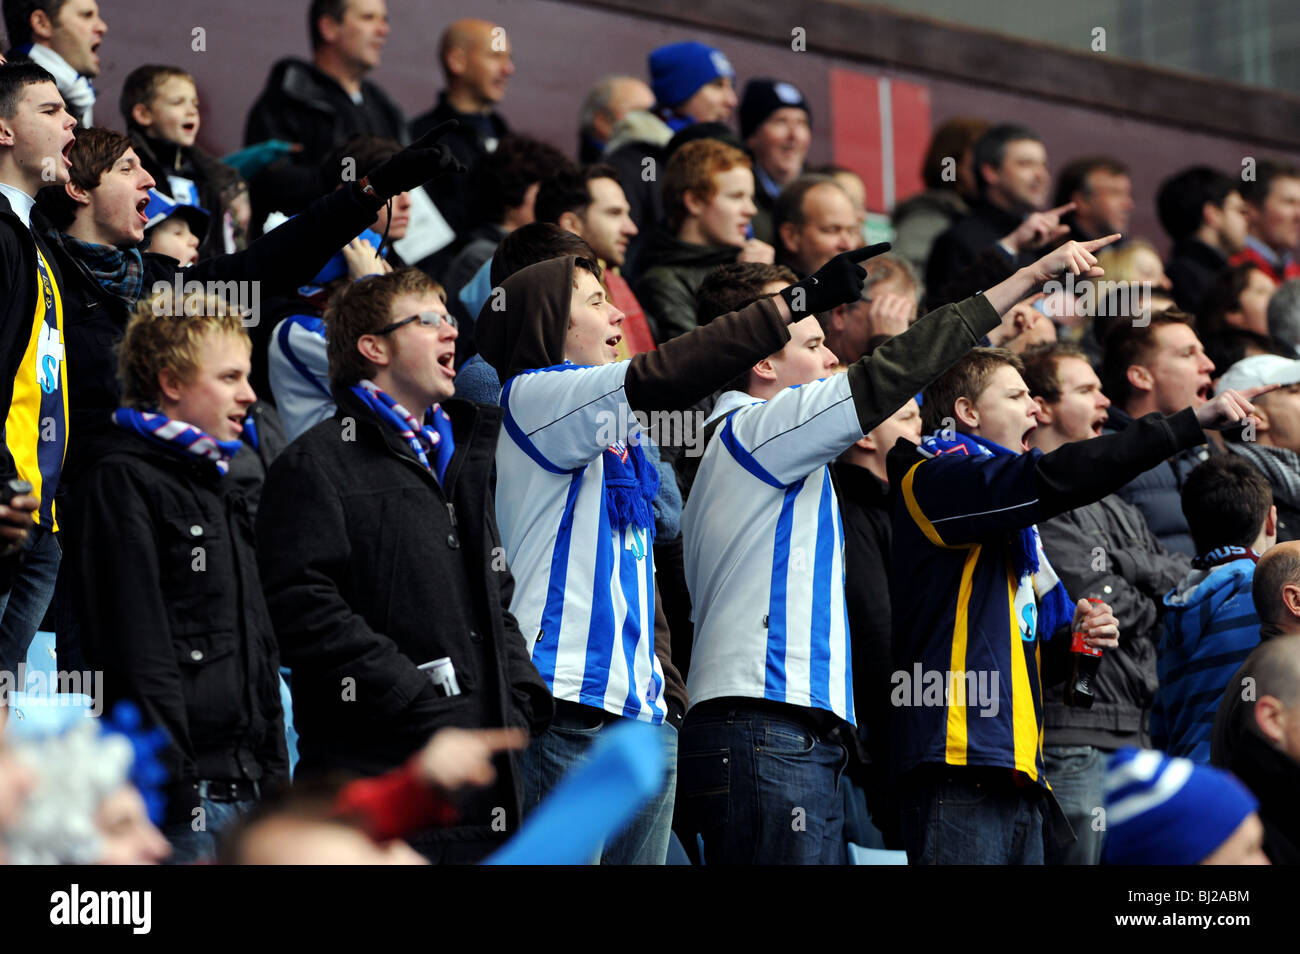 Football fans chanting at at match Stock Photo